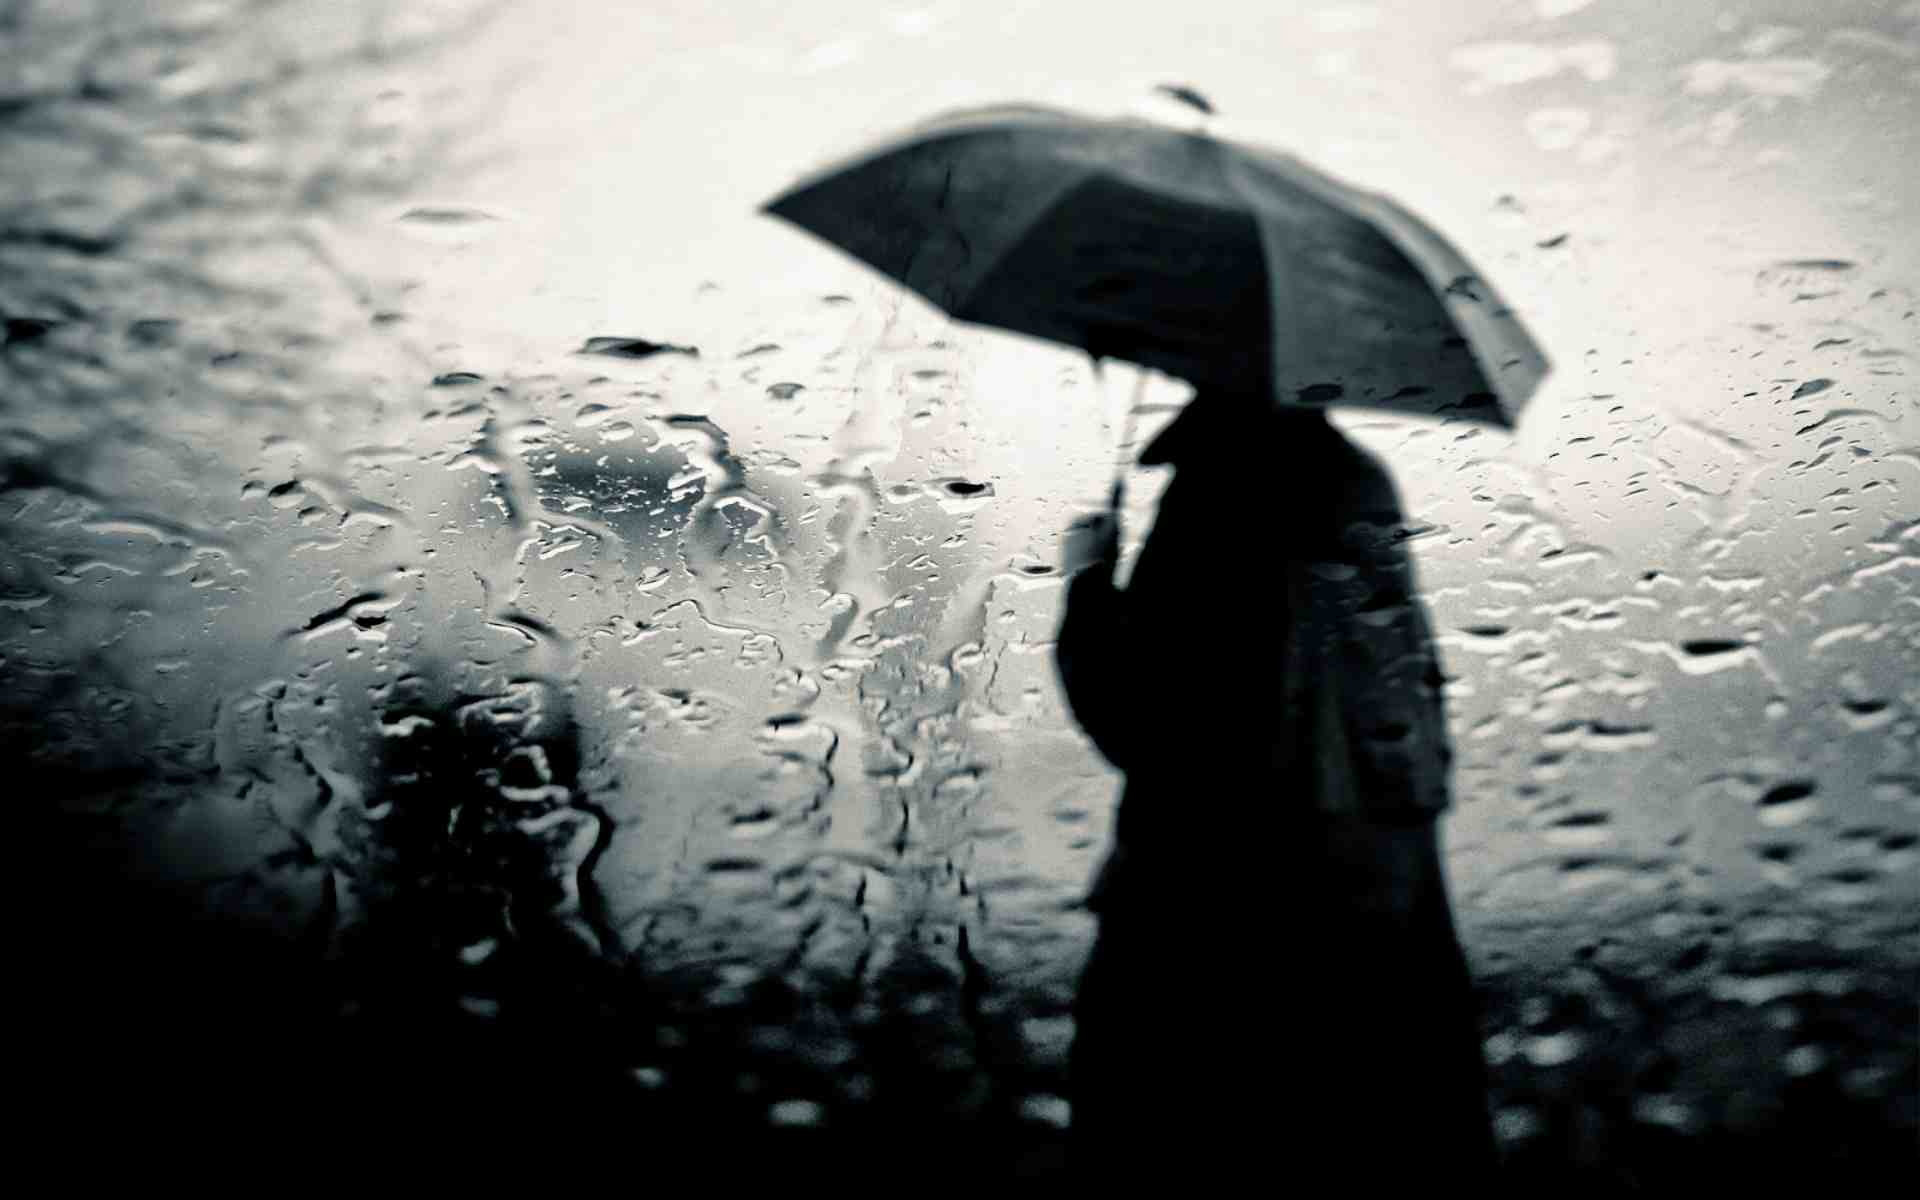 Hình cảnh mưa đêm buồn đầy cảm xúc, phù hợp với tâm trạng của bạn